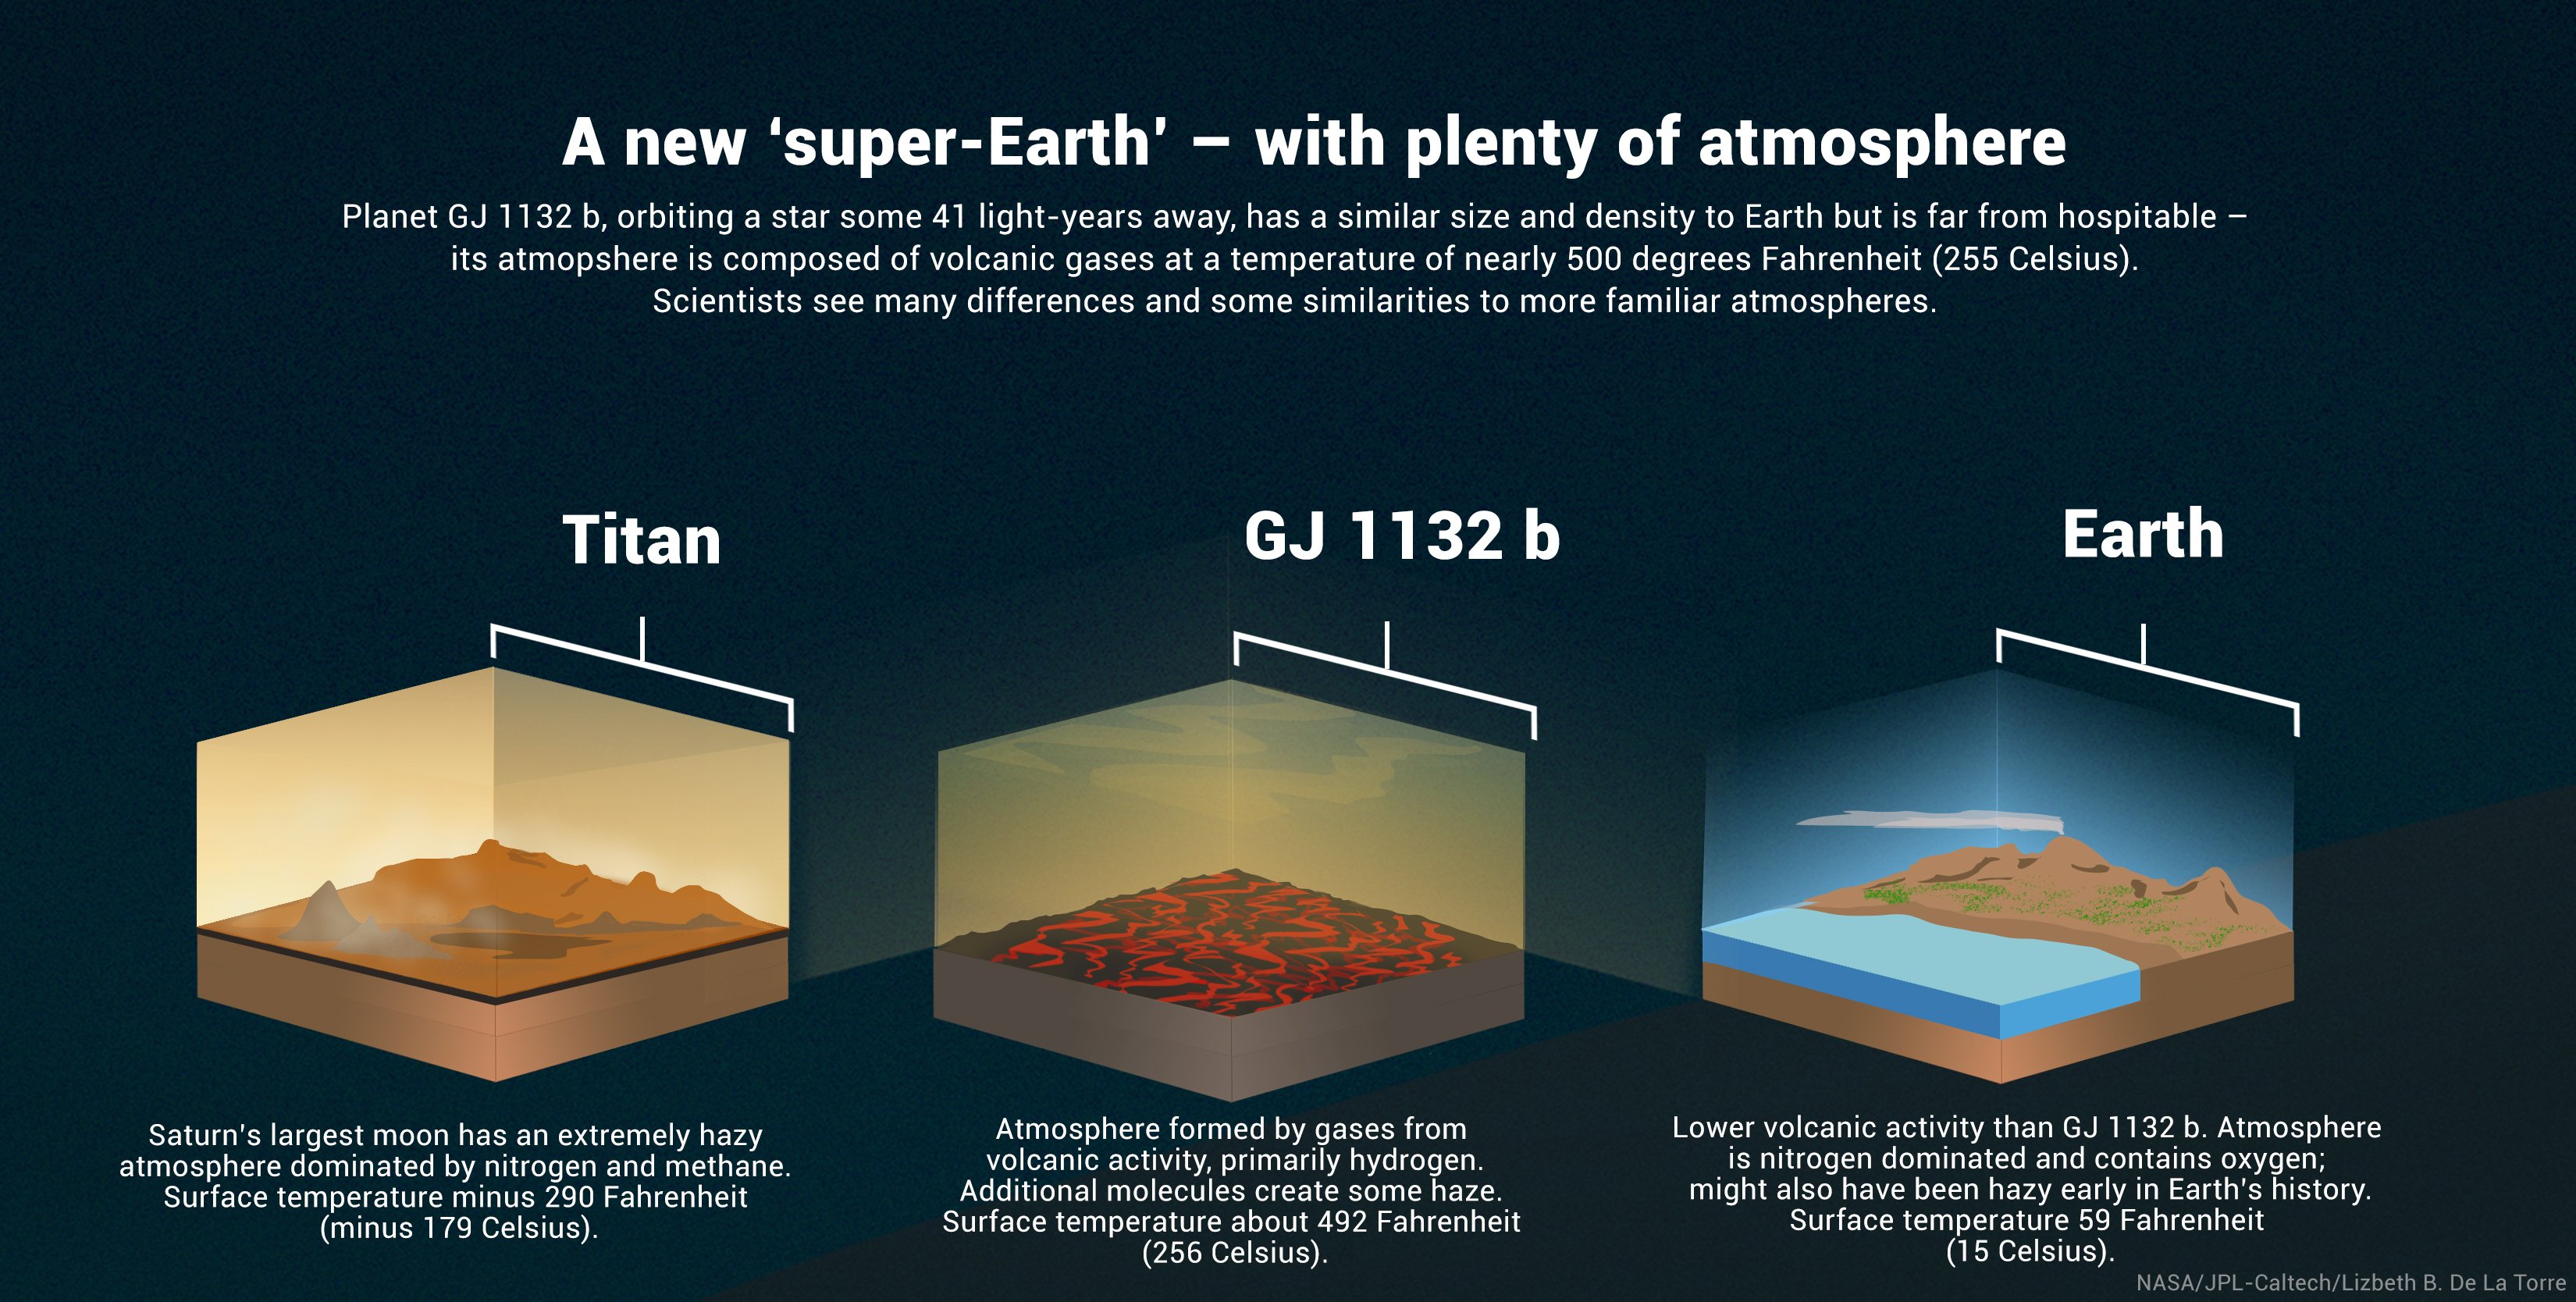 Esquema comparativo (em inglês) das características do GJ 1132 b com outros planetas